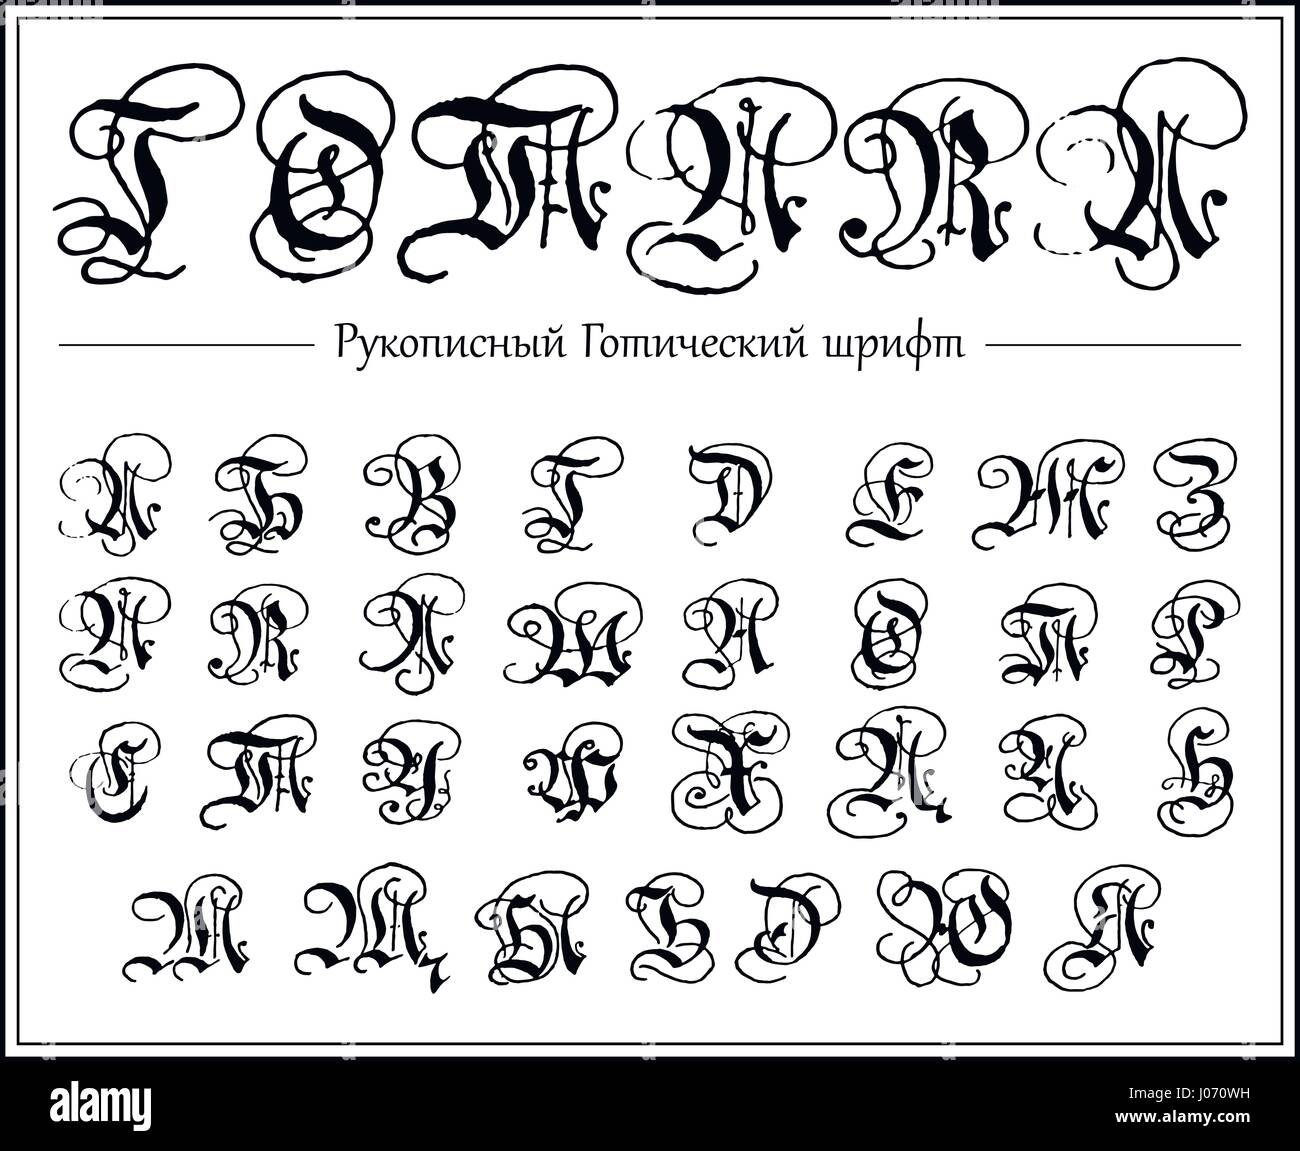 Russisches Alphabet Gotische Schrift Schrift Alle Kyrillischen Grossbuchstaben Handgezeichnete Blackletters Stock Vektorgrafik Alamy